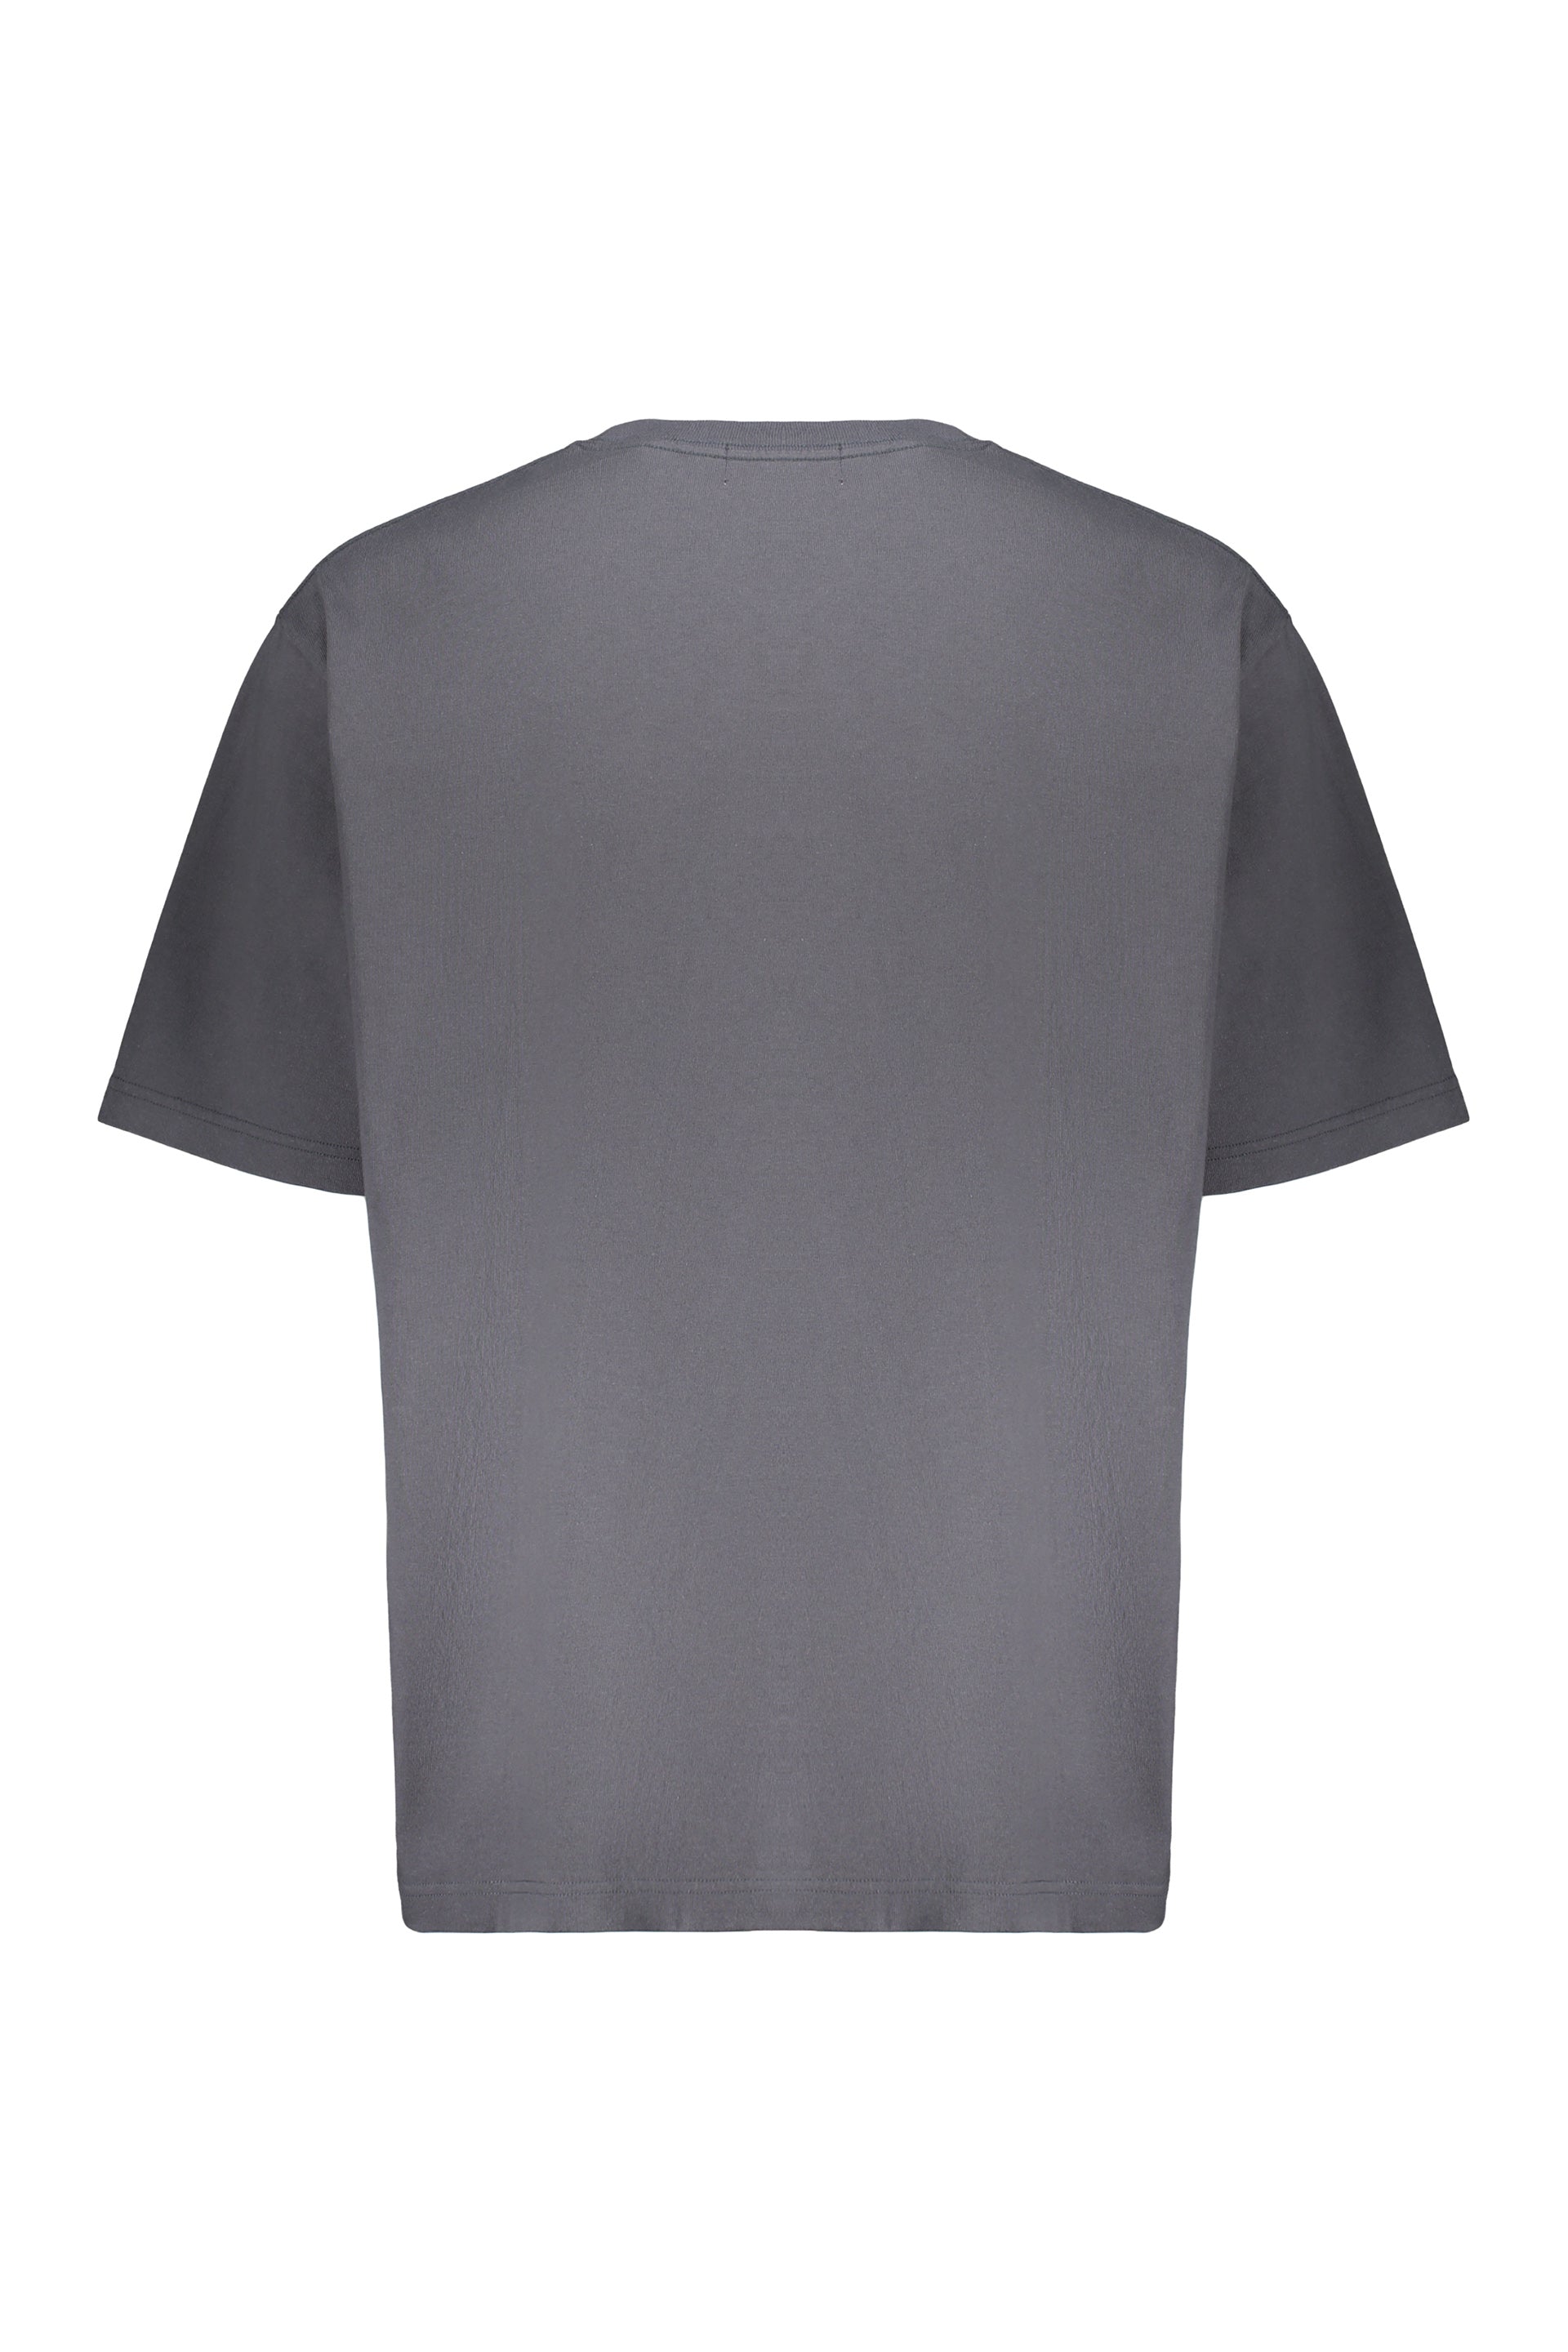 AMBUSH-OUTLET-SALE-Cotton-T-shirt-Shirts-ARCHIVE-COLLECTION-2_00503db5-0d59-40e6-adf4-d9e50a980e71.jpg